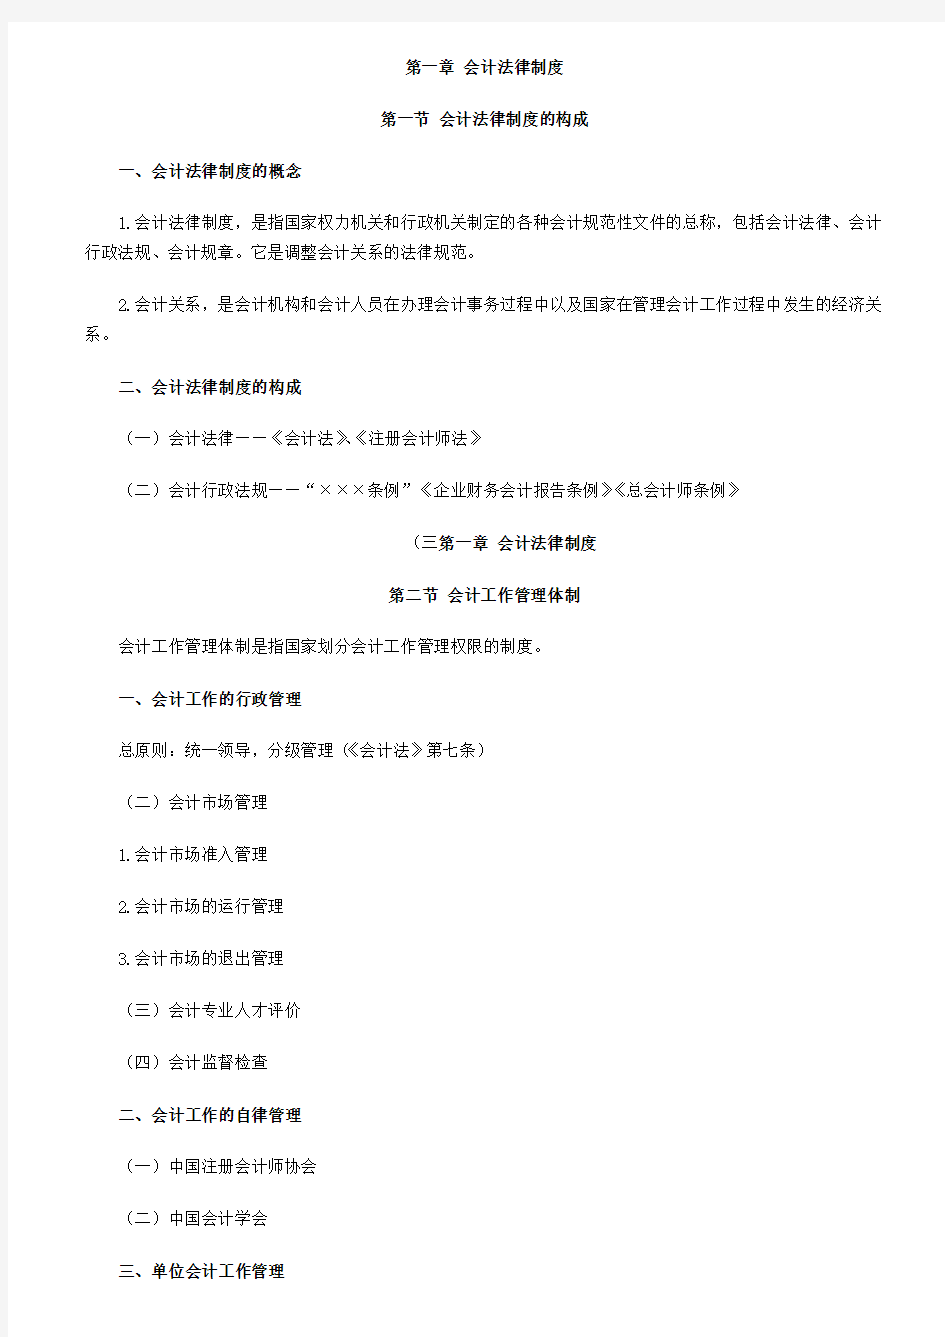 【北京】2014年会计从业资格考试财经法规知识点